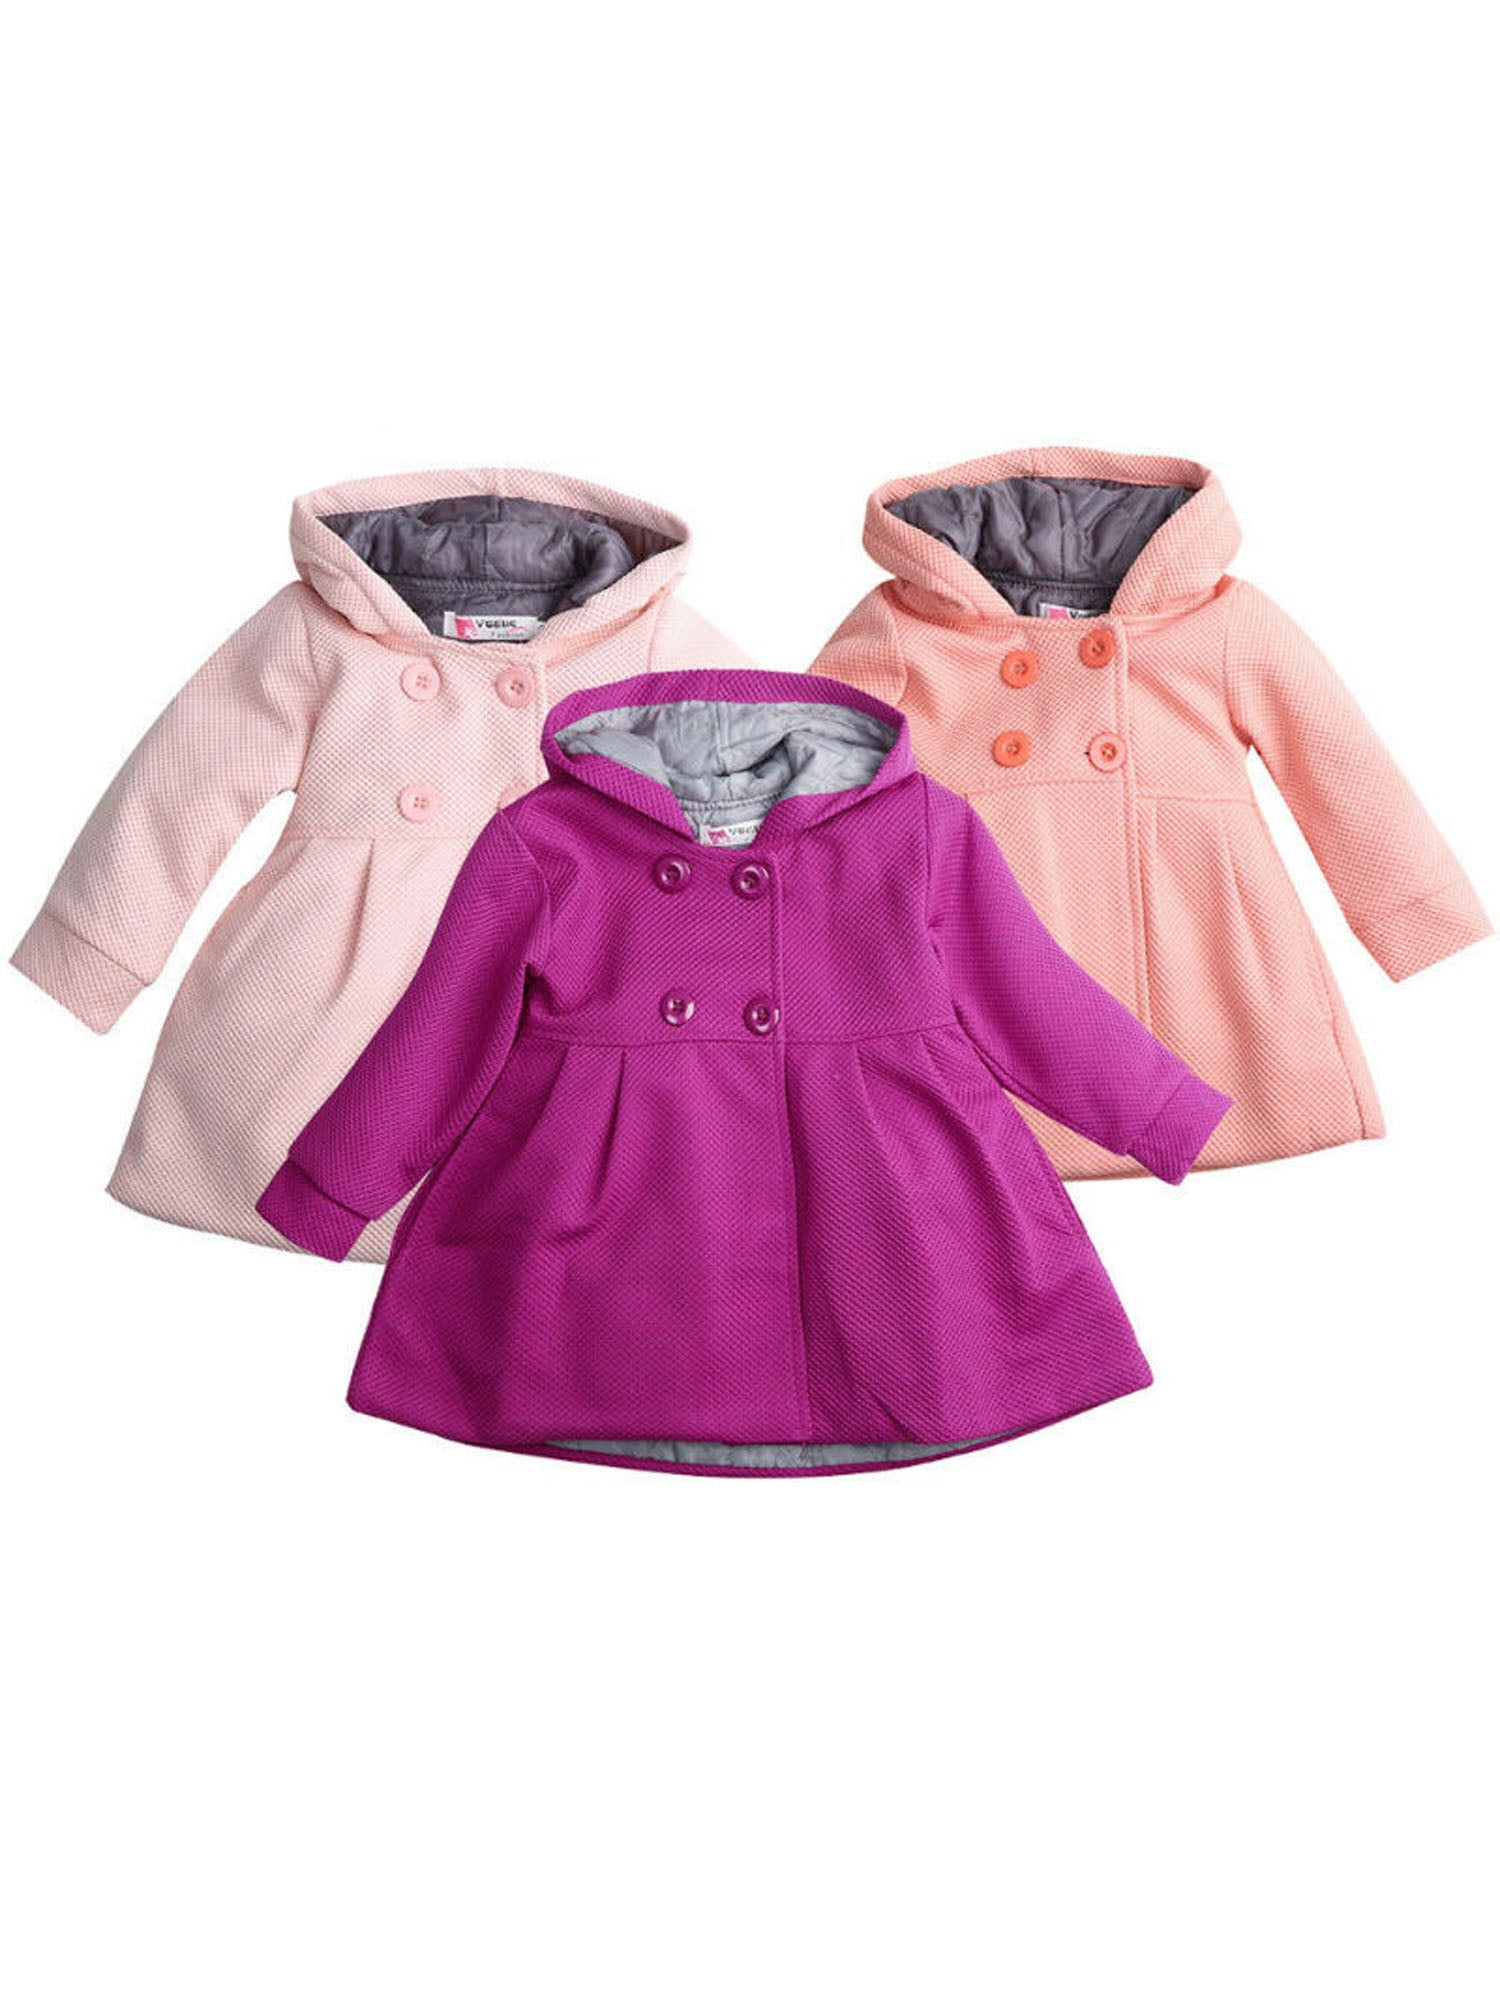 Baby Girl Hooded Trench Coat Fall Winter Windbreaker Parka Jacket Kids Outerwear 